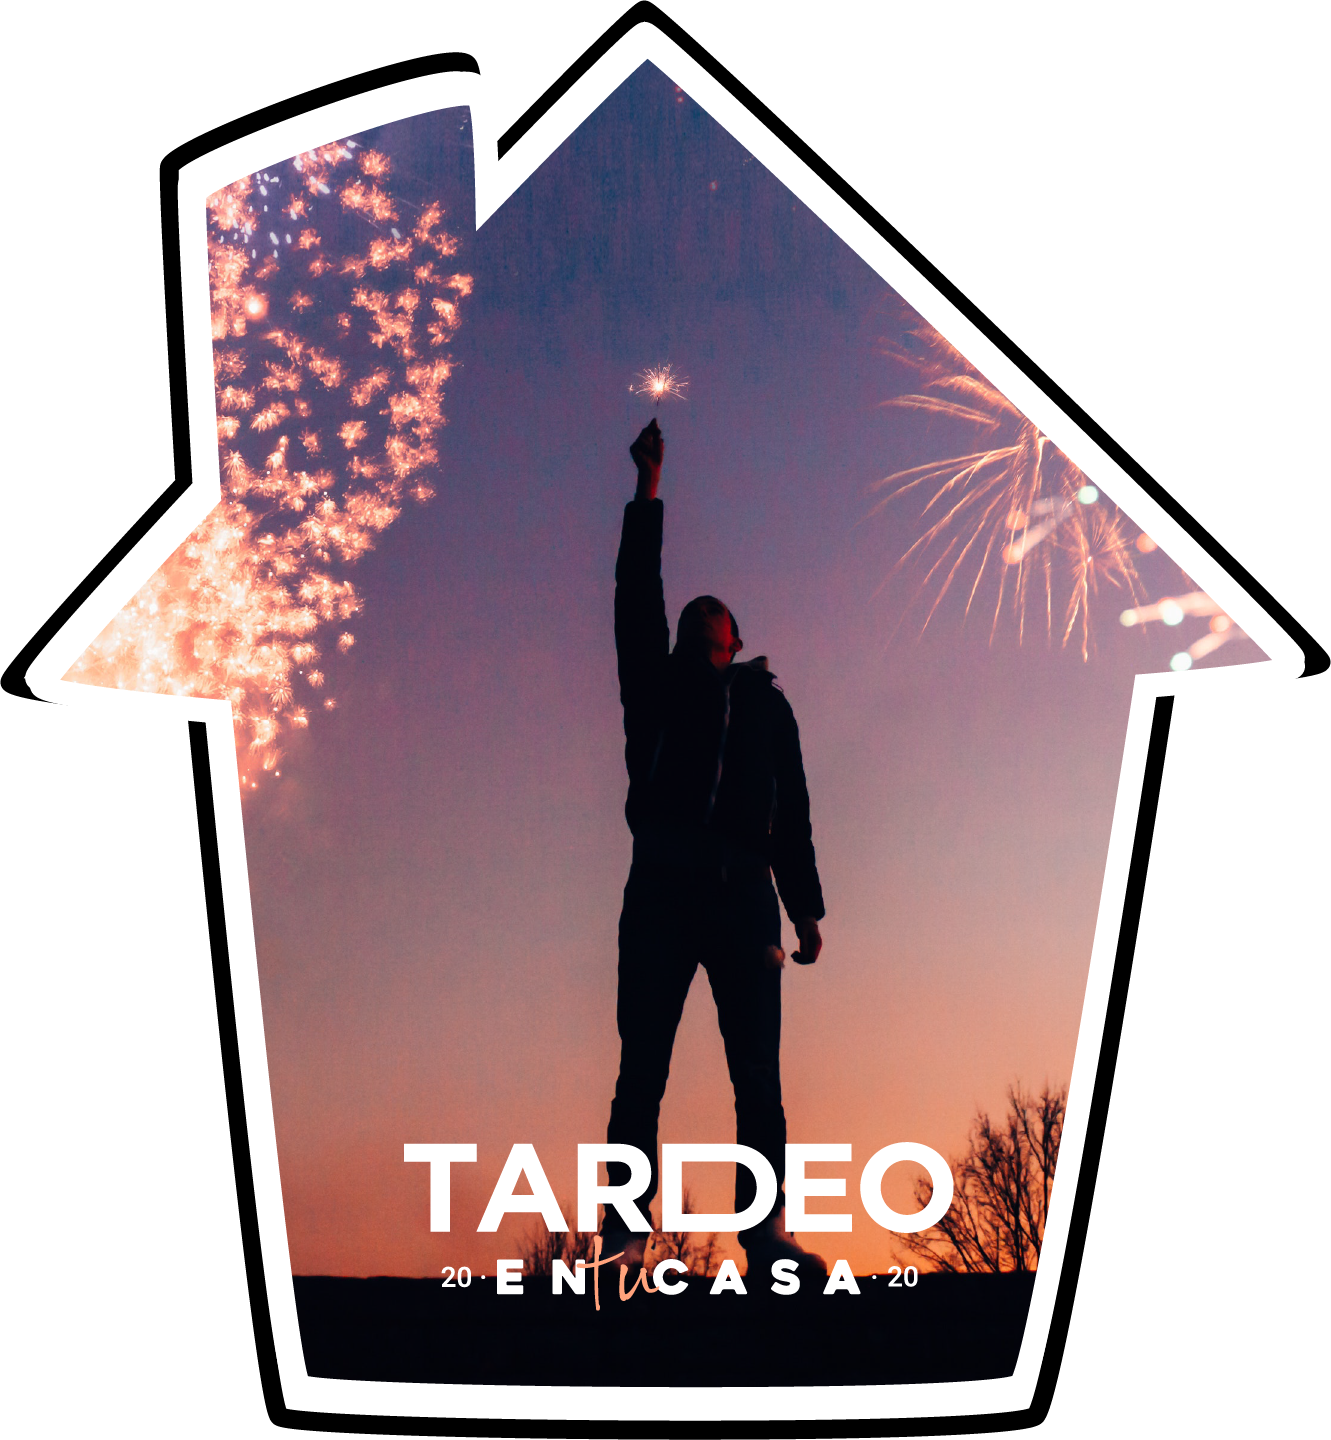 Tardeo En Casa Logotipo con Imagen